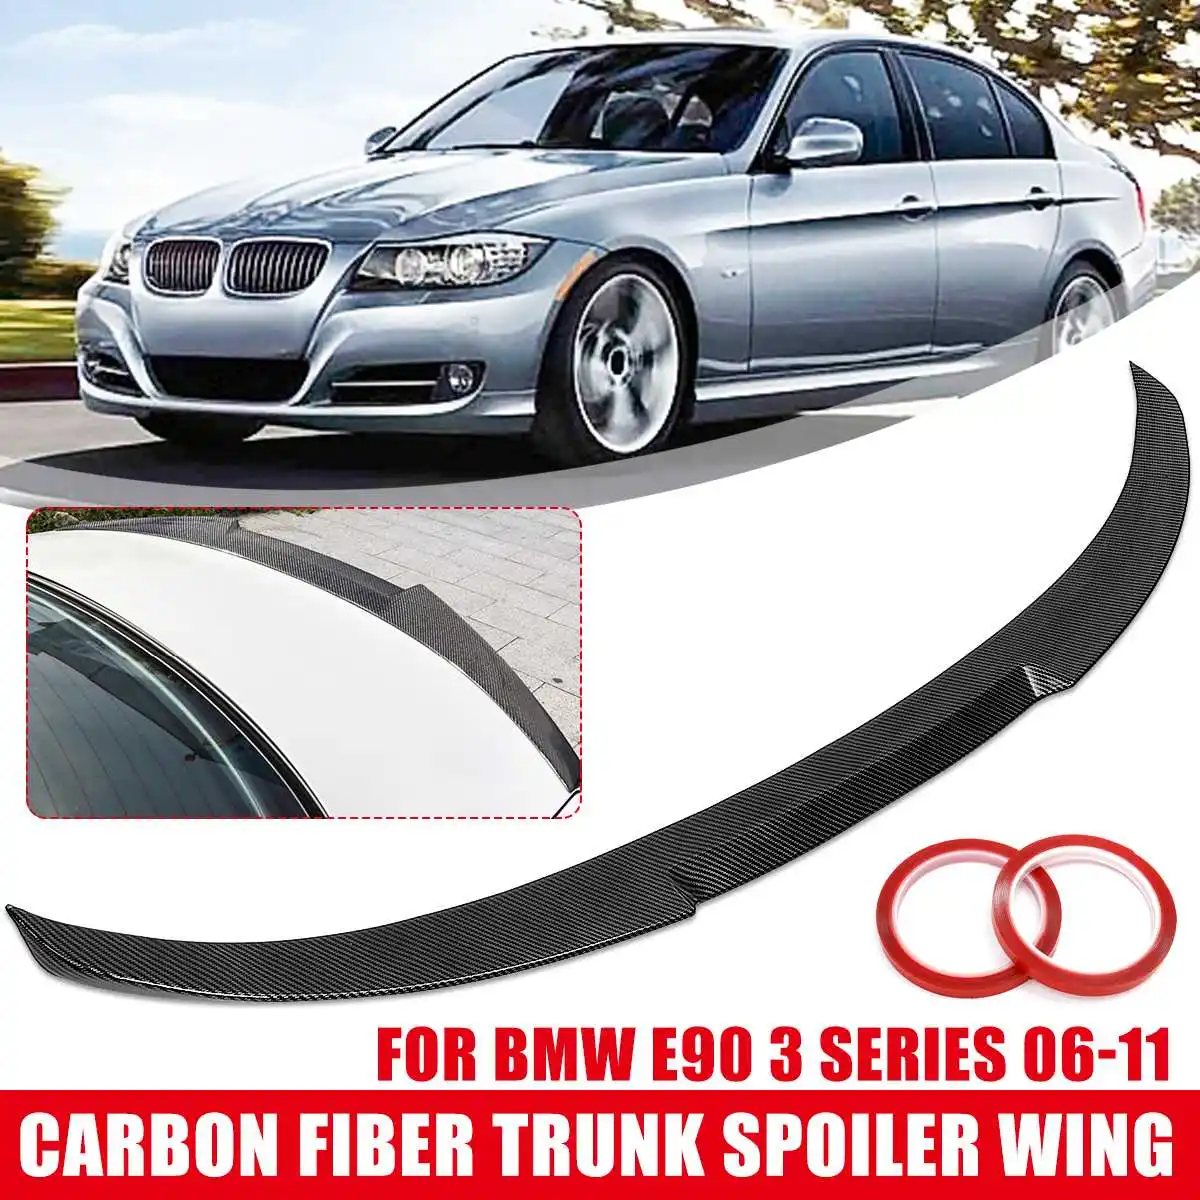 

Глянцевый спойлер для багажника из АБС-пластика черного/углеродного цвета в стиле Wing-M4 для 2006-2011 для BMW E90 3 серии SEDAN & M3 2008-2012